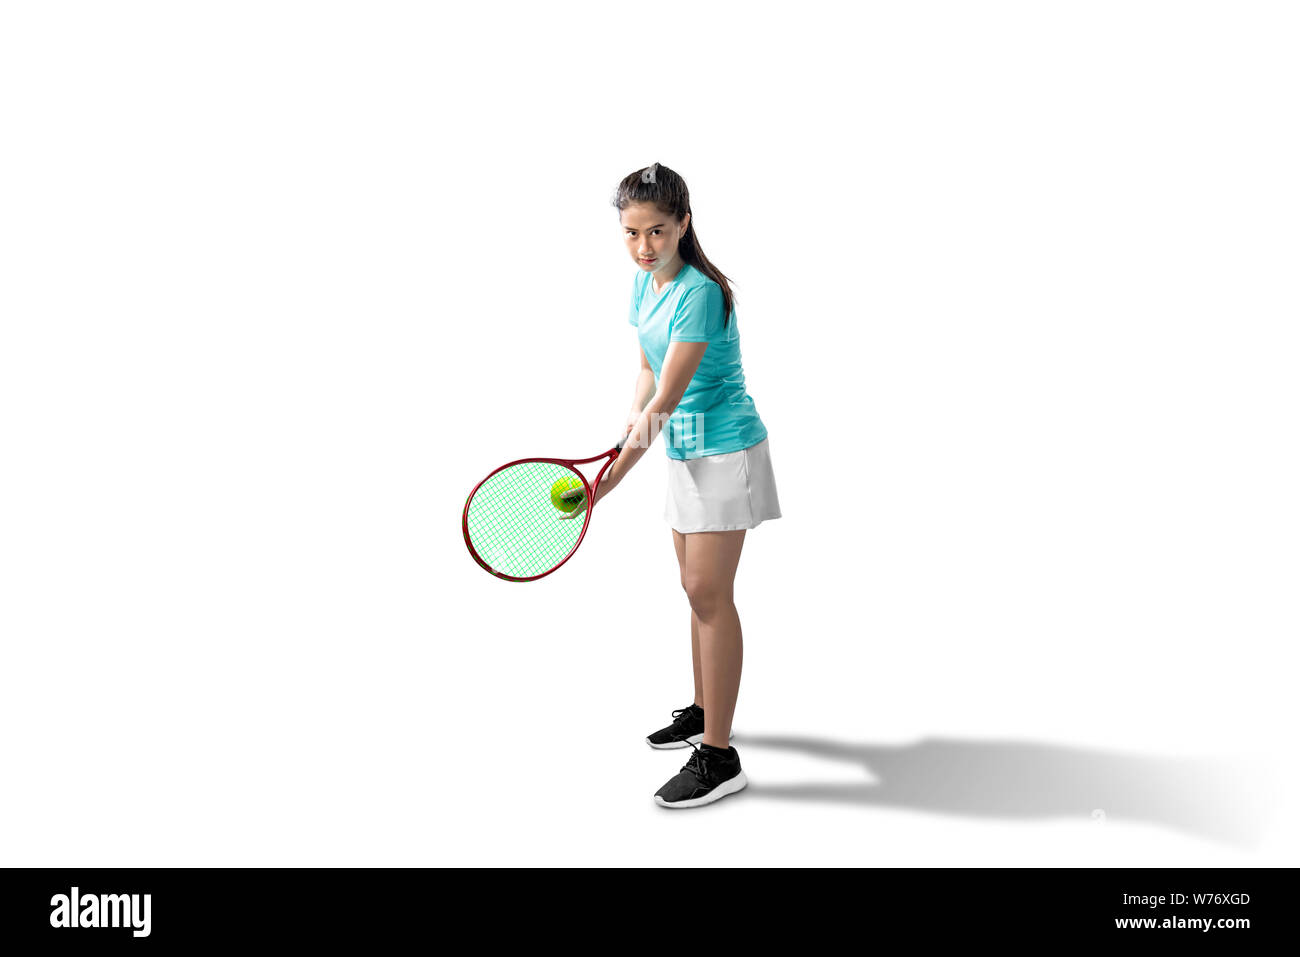 Femme Asiatique avec une raquette de tennis et la balle dans ses mains, prêt à servir de position de fond blanc Banque D'Images